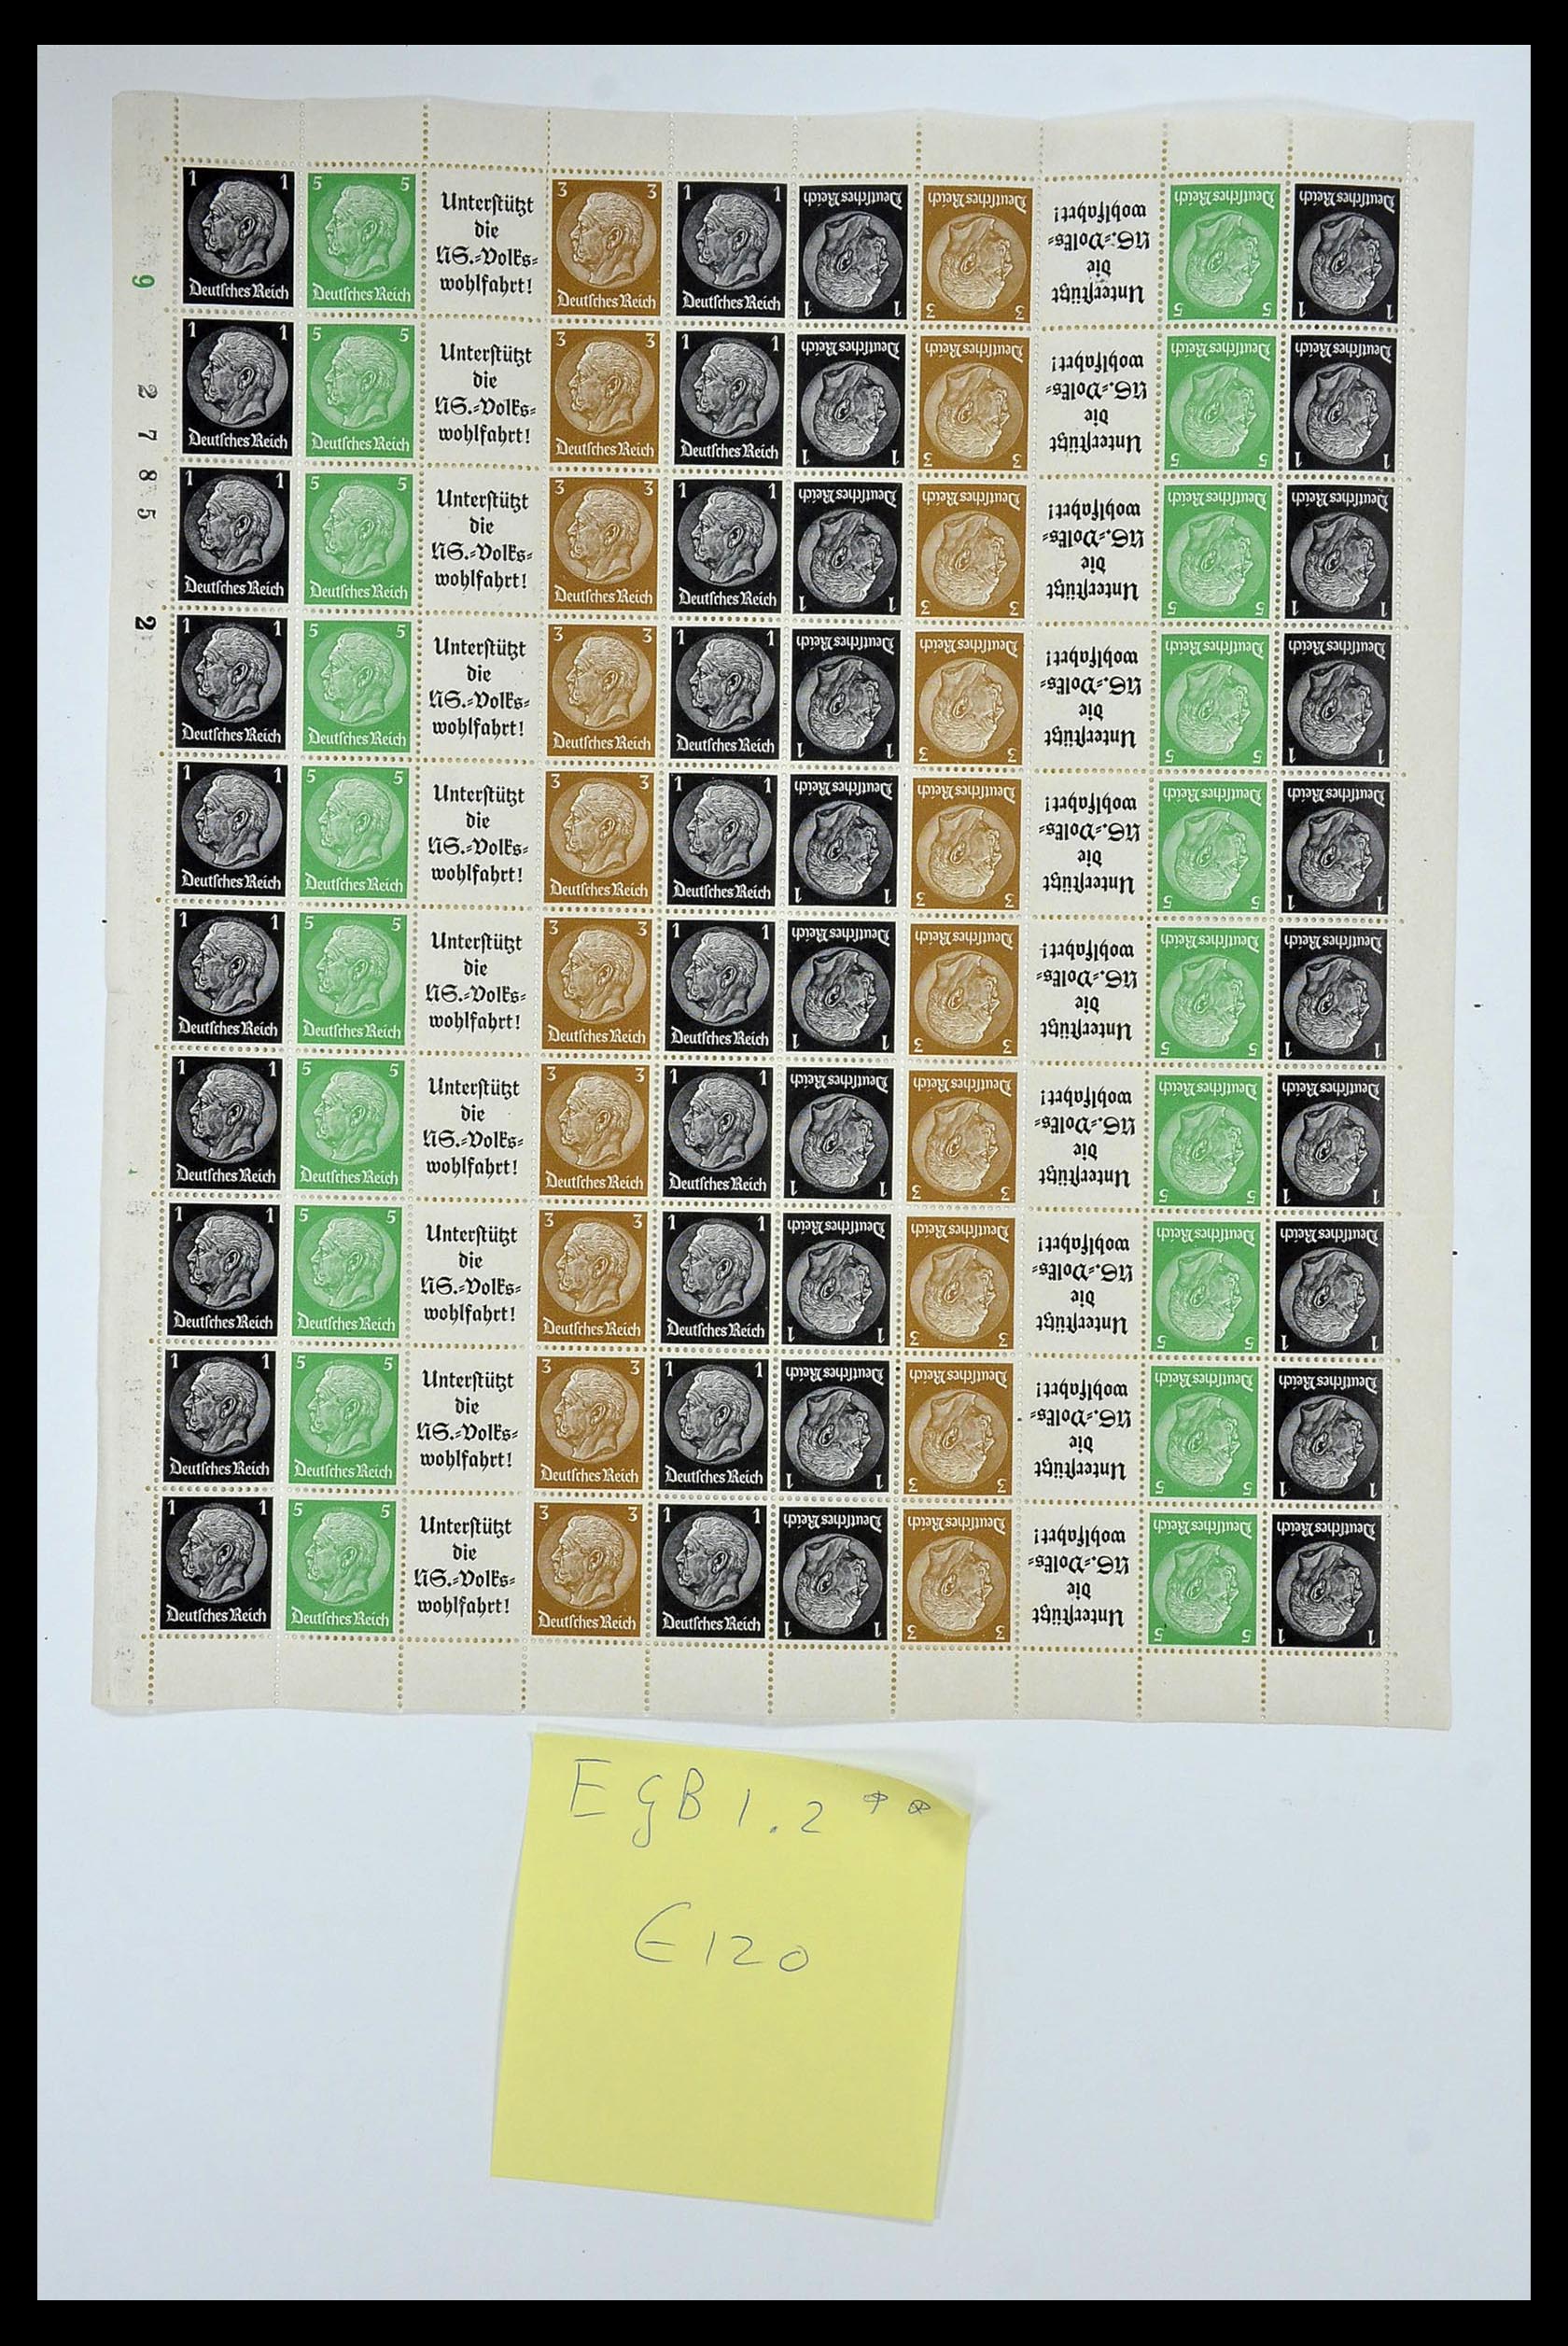 35075 049 - Stamp Collection 35075 German Reich Markenheftchenbogen 1933-1941.